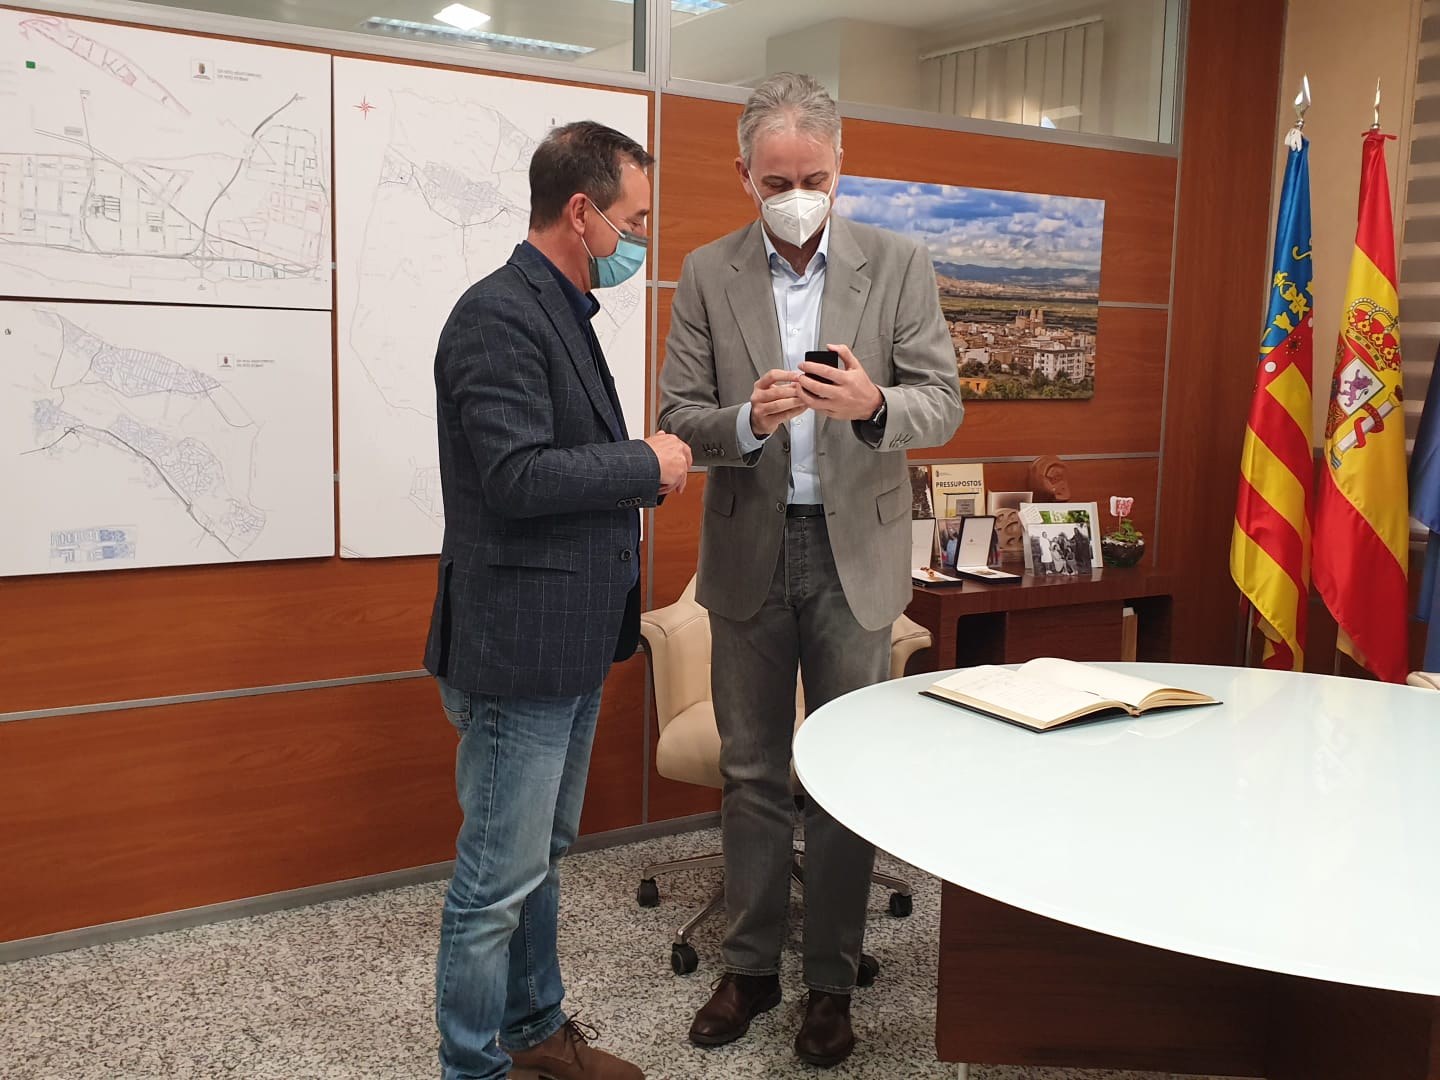 L'alcalde de Riba-roja es reuneix amb el vicepresident del Consell per a analitzar les poltiques d'habitatge en el municipi